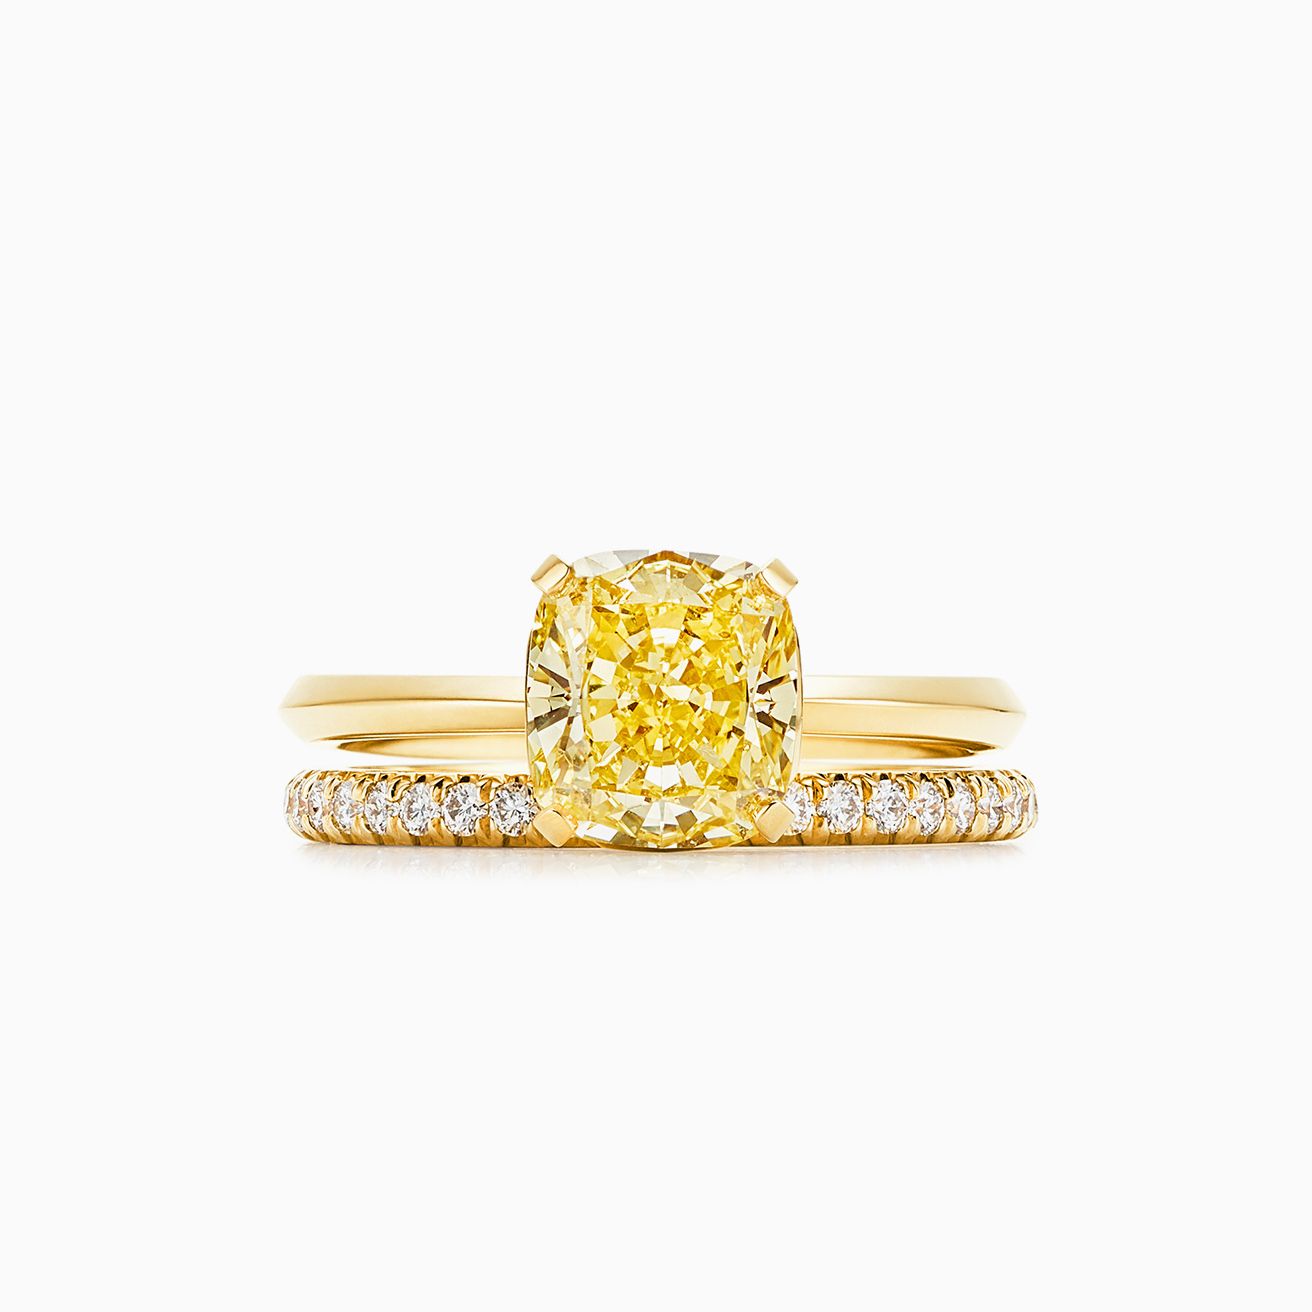  Bague  Tiffany  True avec diamant jaune or 18 carats l 